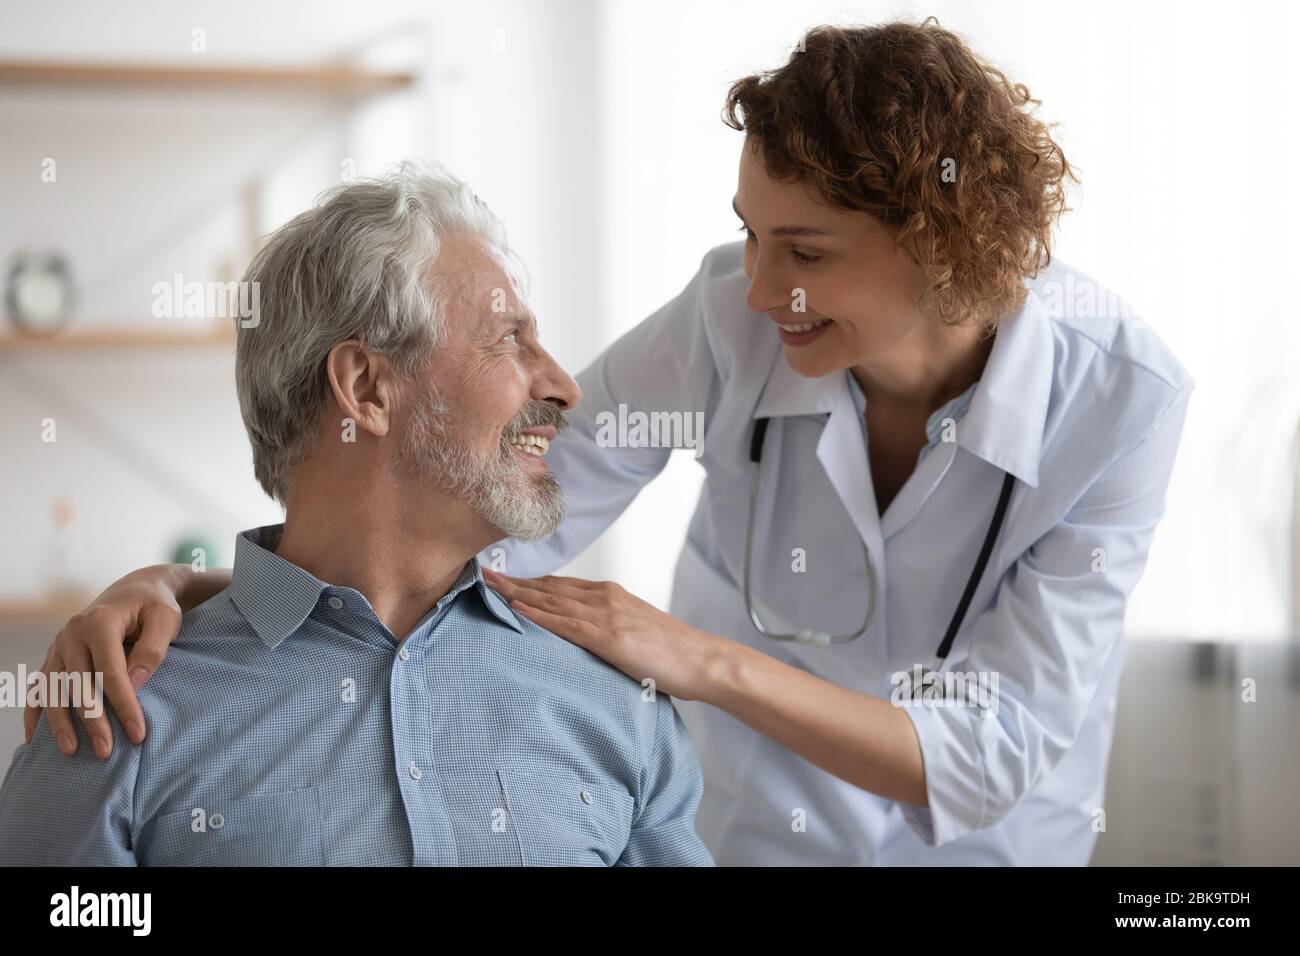 Gentile medico femminile sorridente che abbraccia incoraggiando un paziente maschile felice Foto Stock